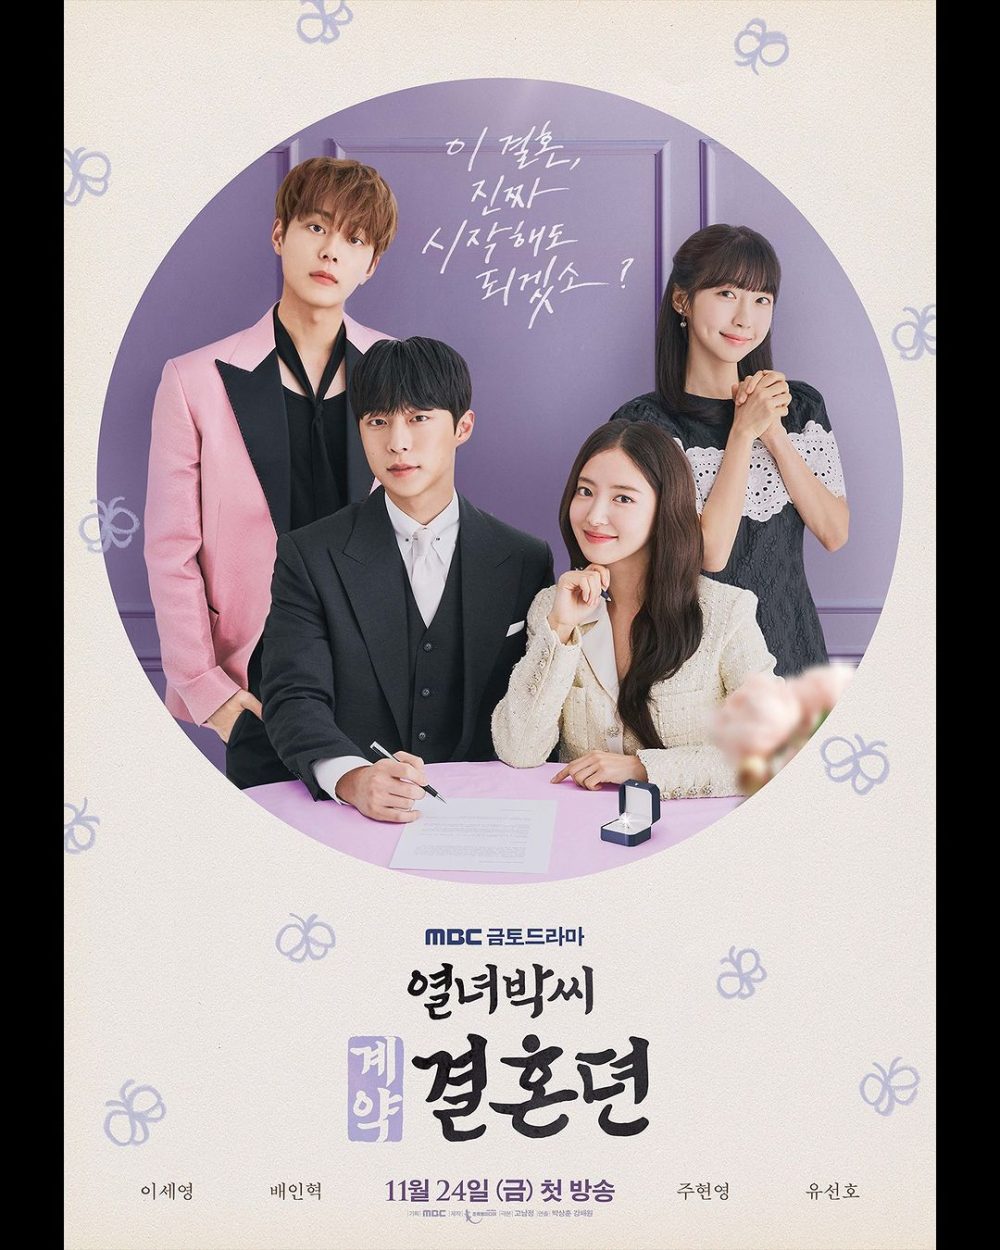 Hôn nhân hợp đồng (The story of Park’s marriage contract)